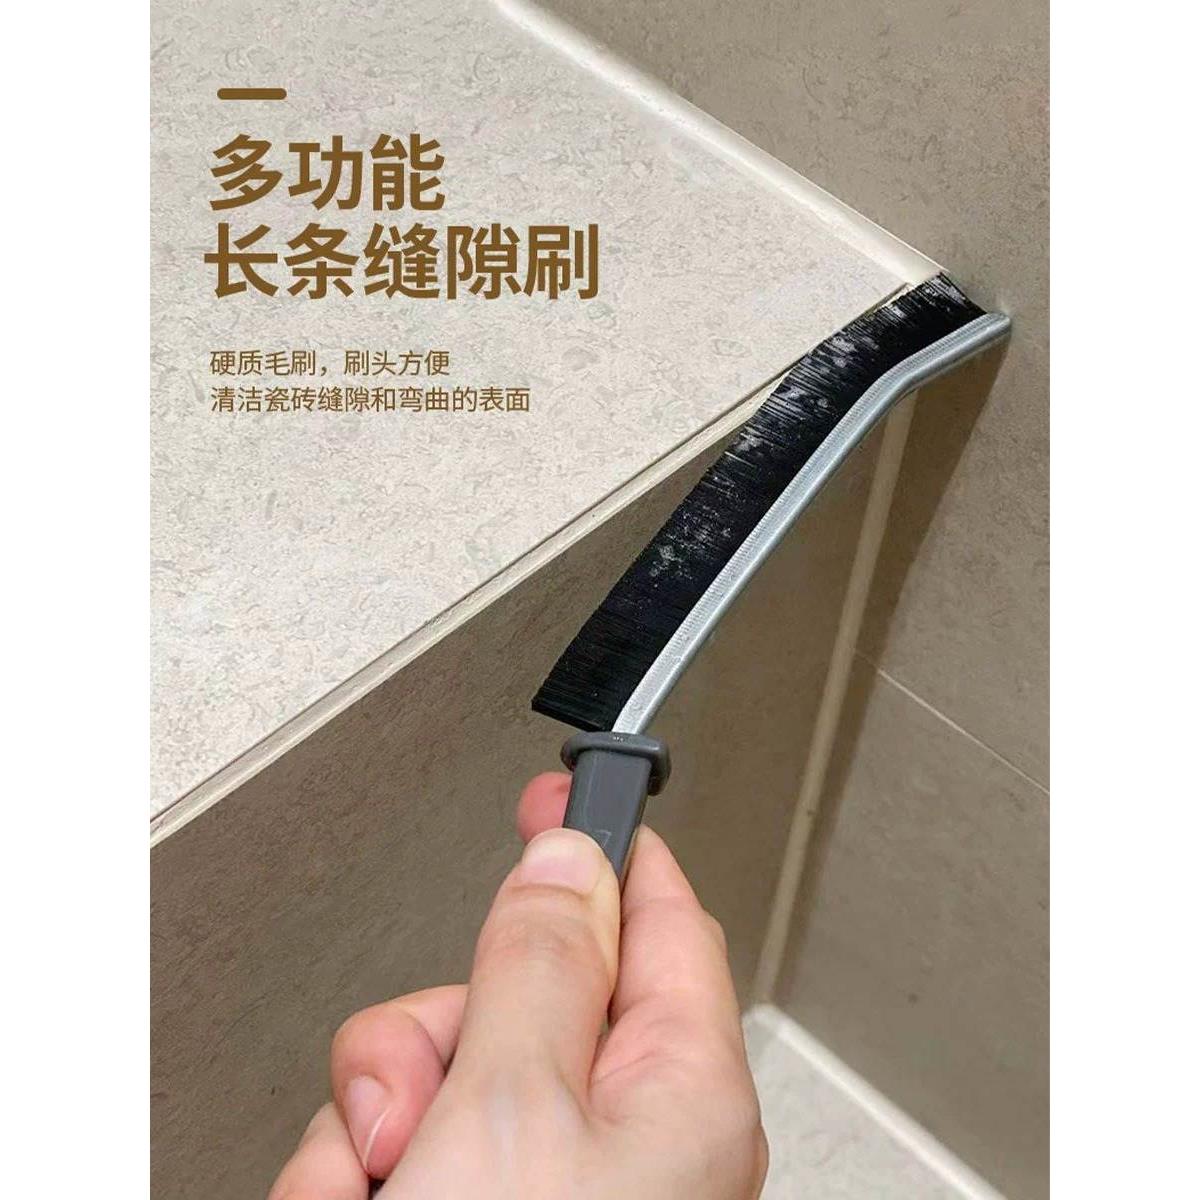 日本缝隙刷无死角清洁洗家用马桶卫生间浴室厨房厕所神器刷子